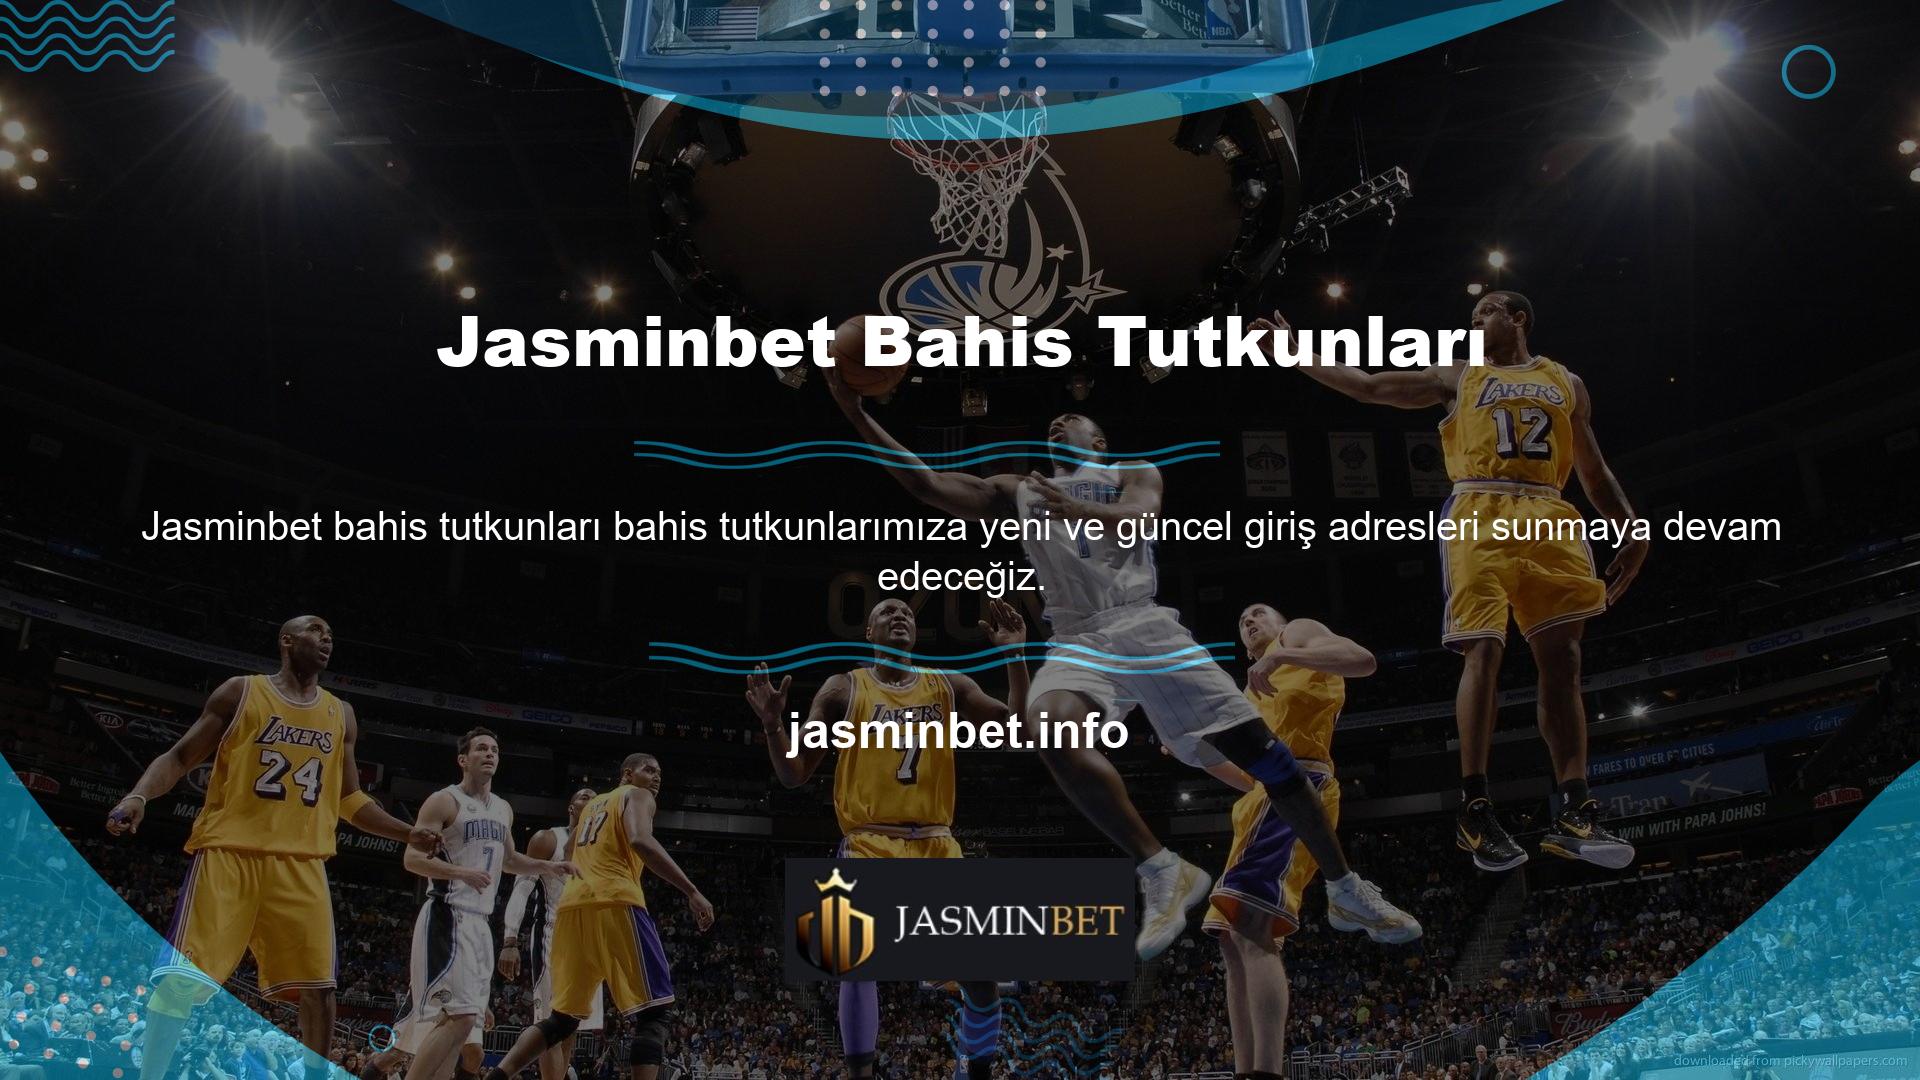 Jasminbet web sitesi, Türkiye'deki en popüler bahis şirketlerinden biri olarak kabul edilmekte ve çok sayıda üyeye sahiptir